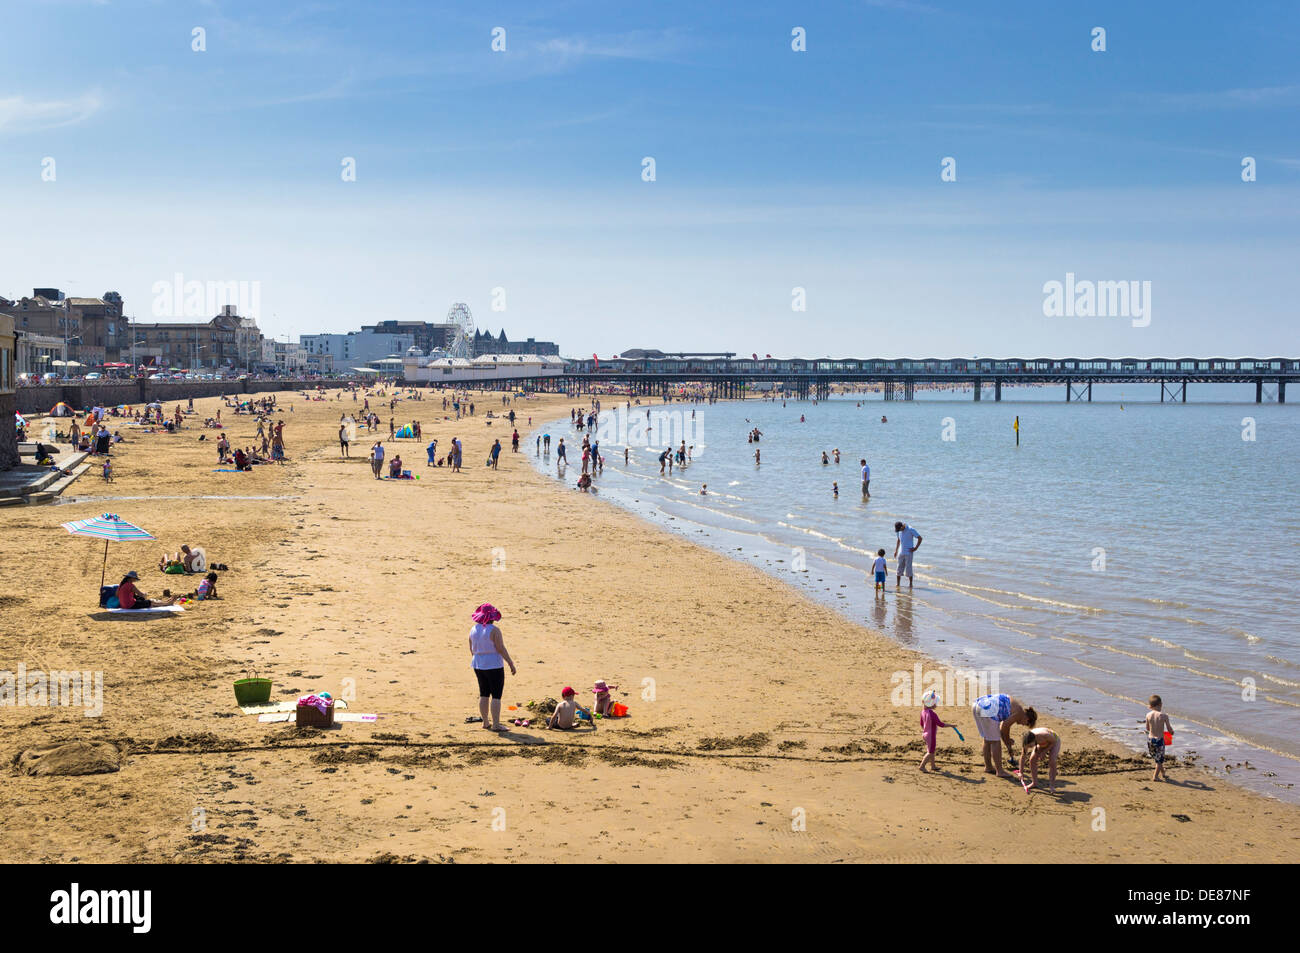 Royaume-uni - le bord de plage beach Weston Super Mare, Somerset, UK Banque D'Images